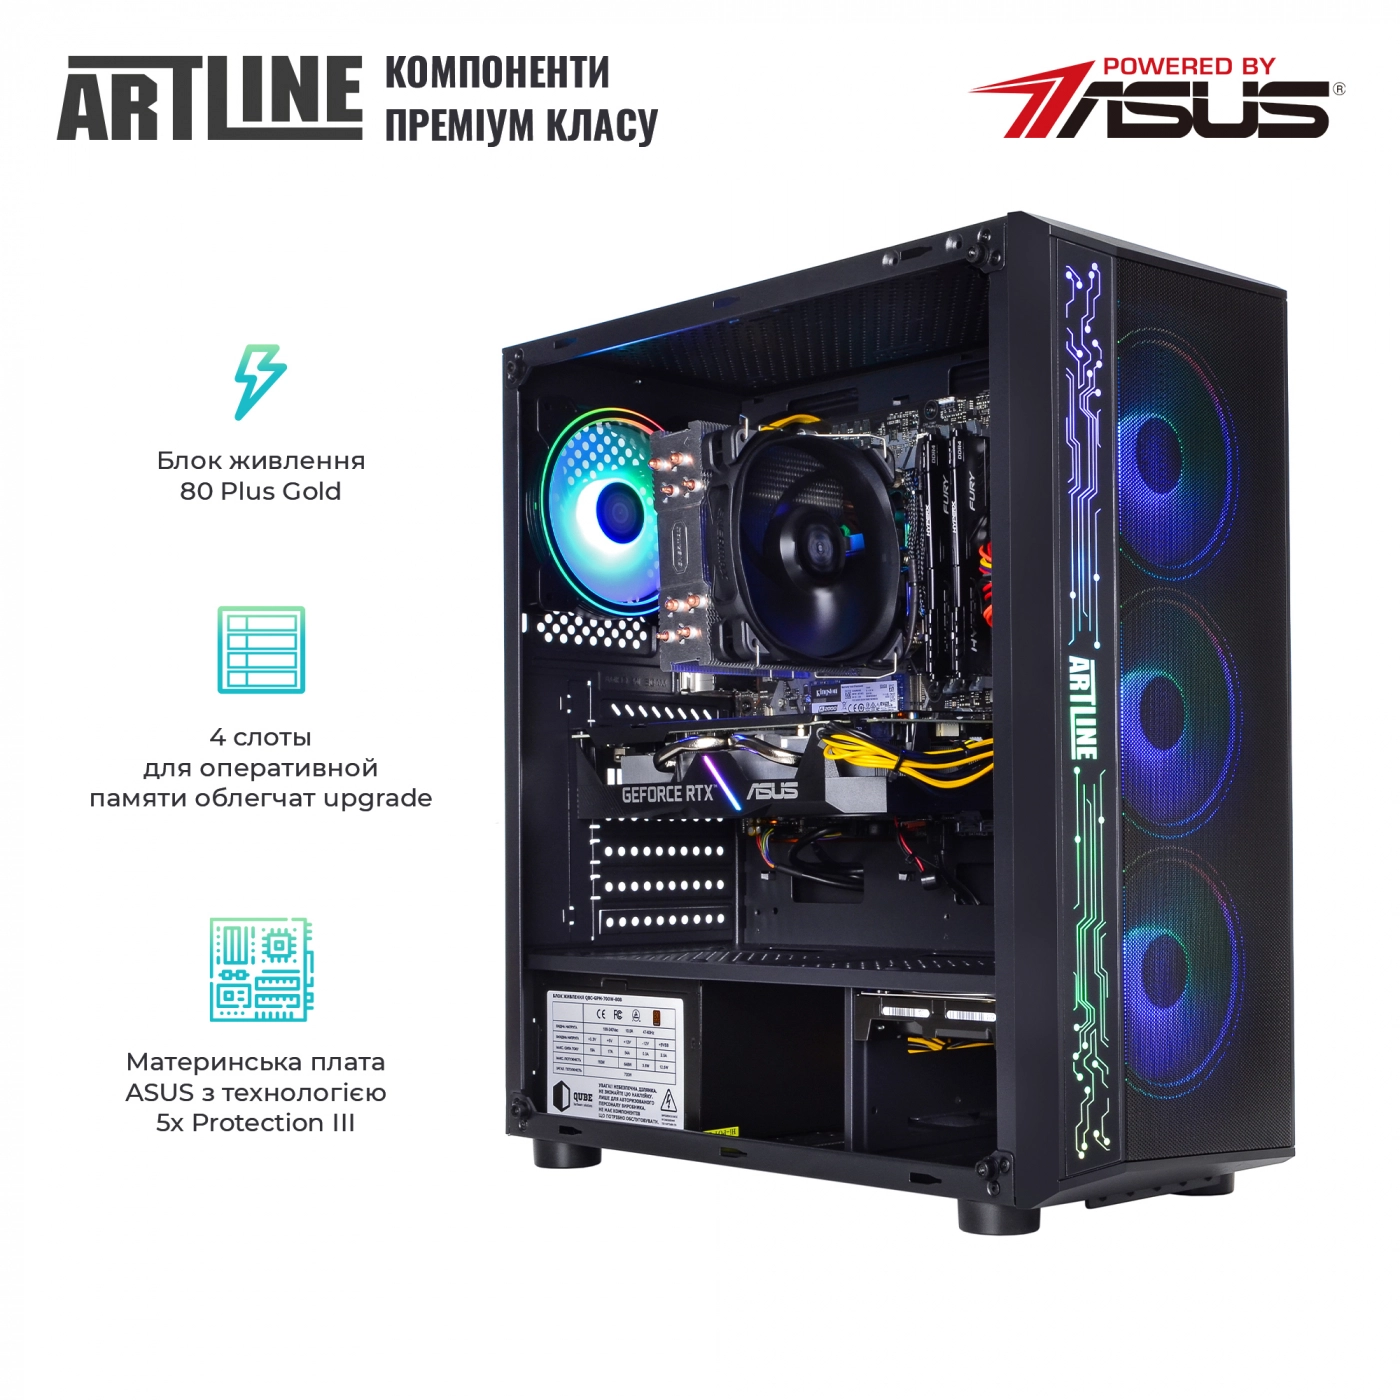 Купить Компьютер ARTLINE Gaming X68v14 - фото 3